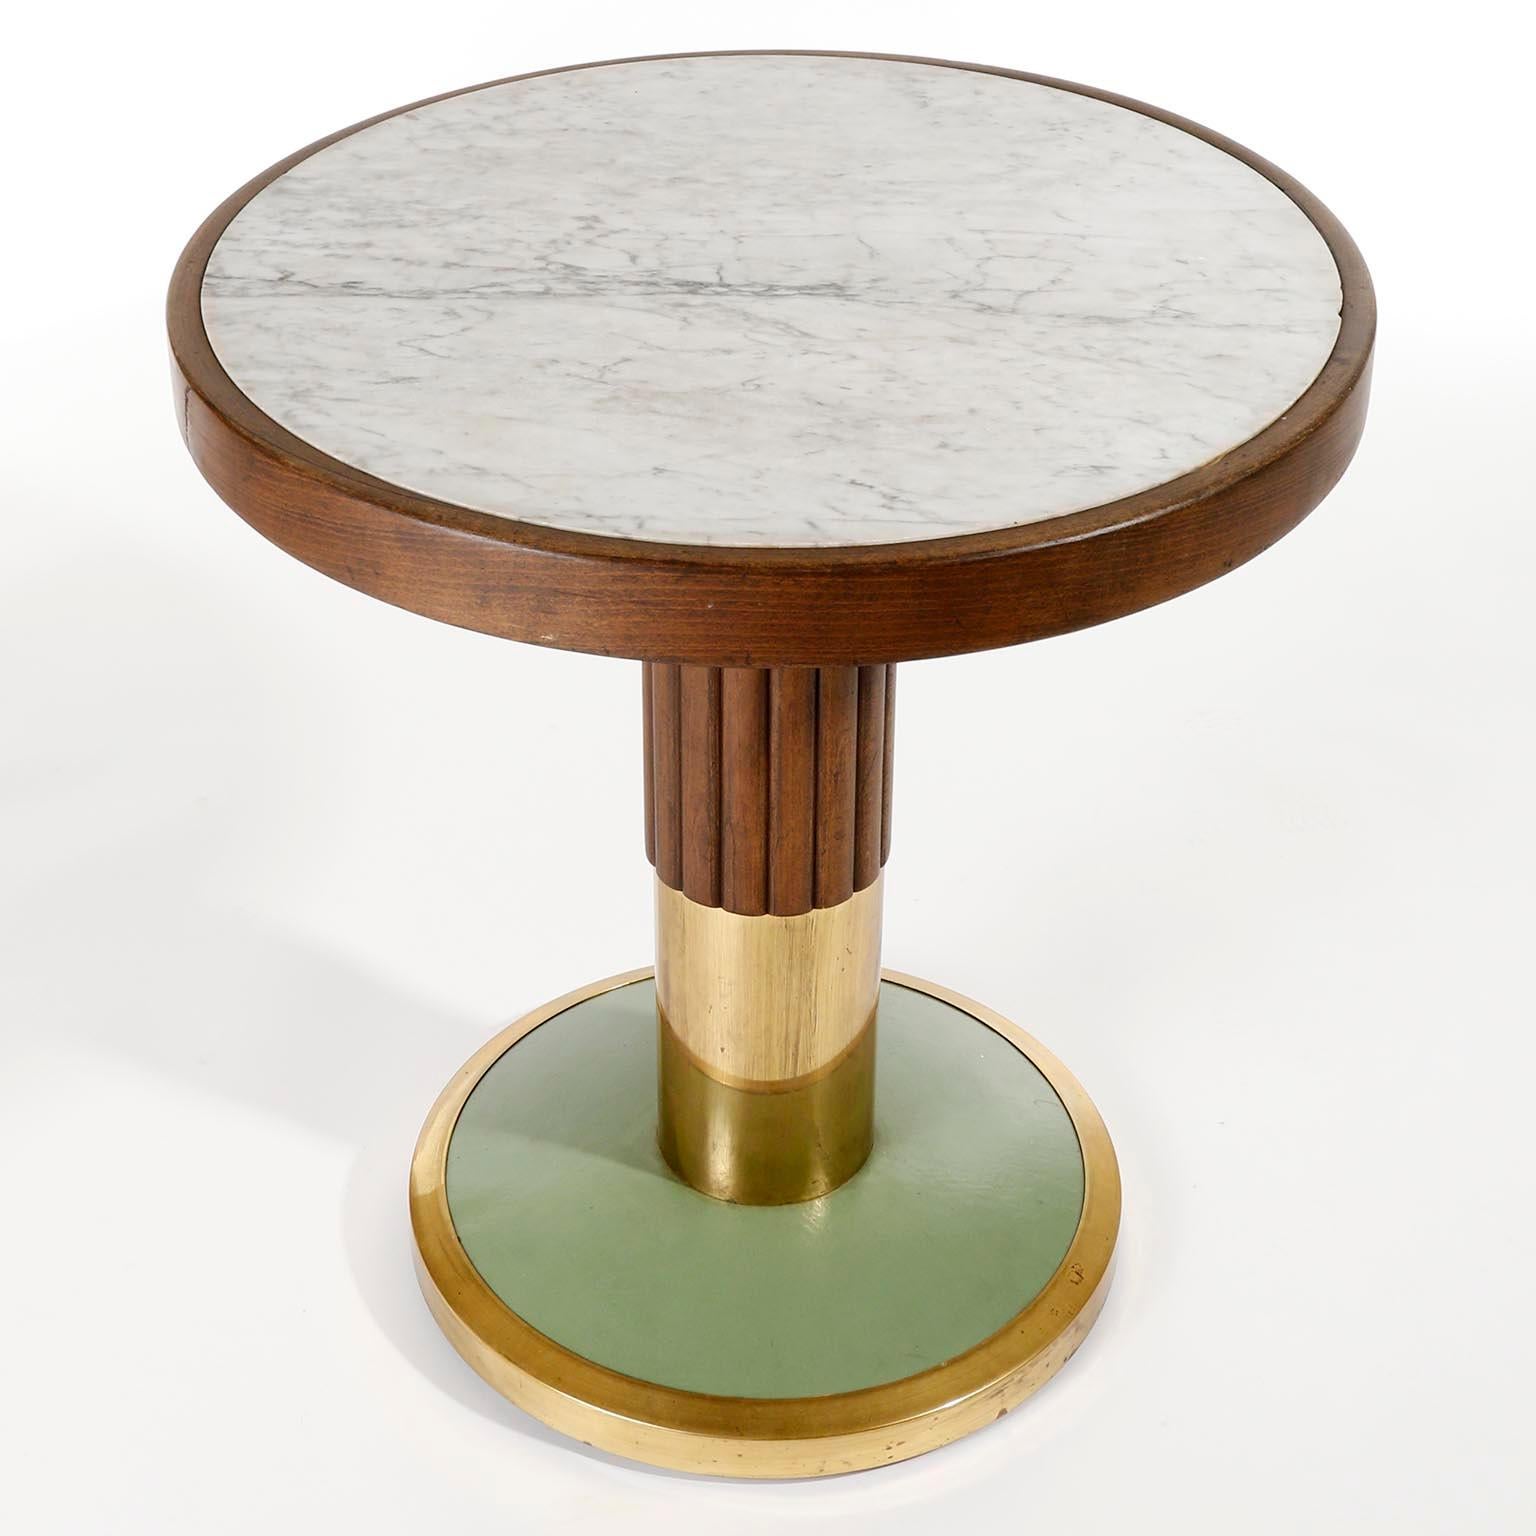 Austrian Pedestal Table, Marble Brass Wood Turquoise, Thonet, Austria, Jugendstil, 1910